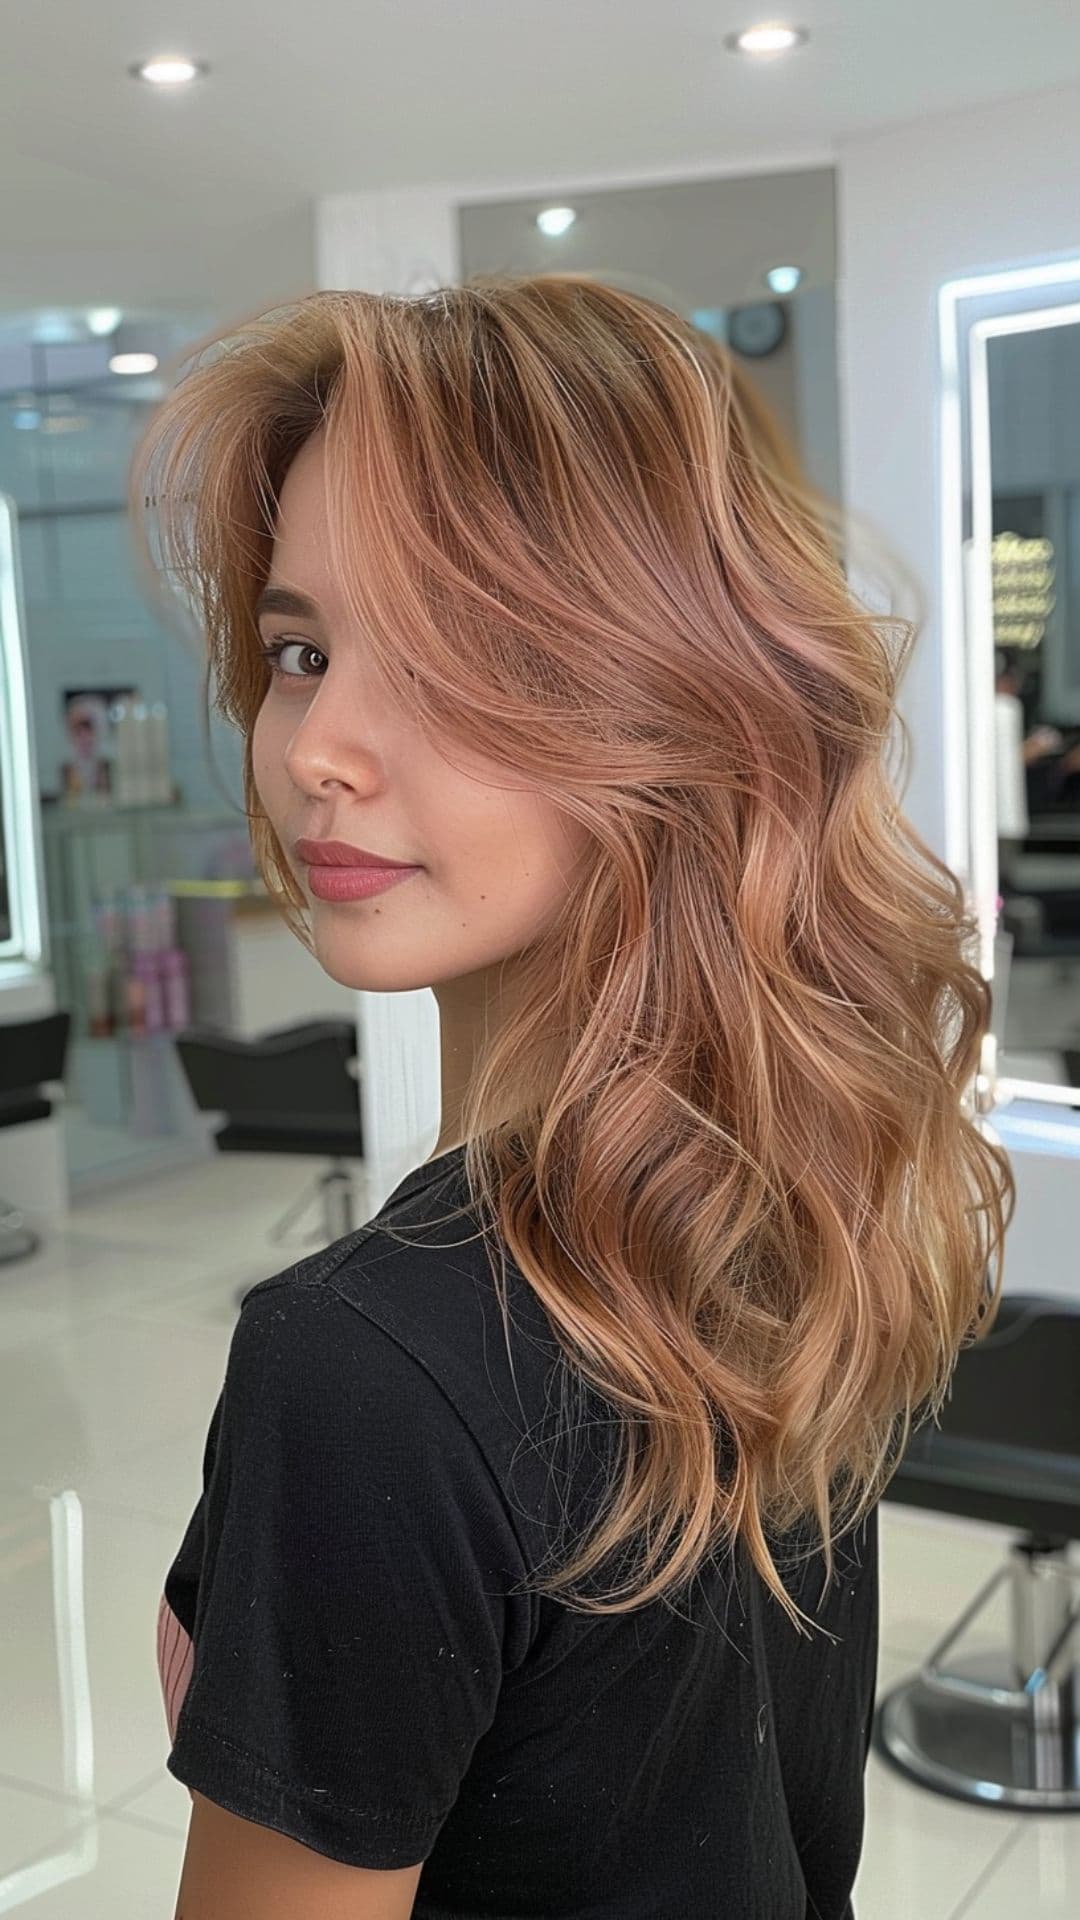 A woman modelling a pastel peach hair.